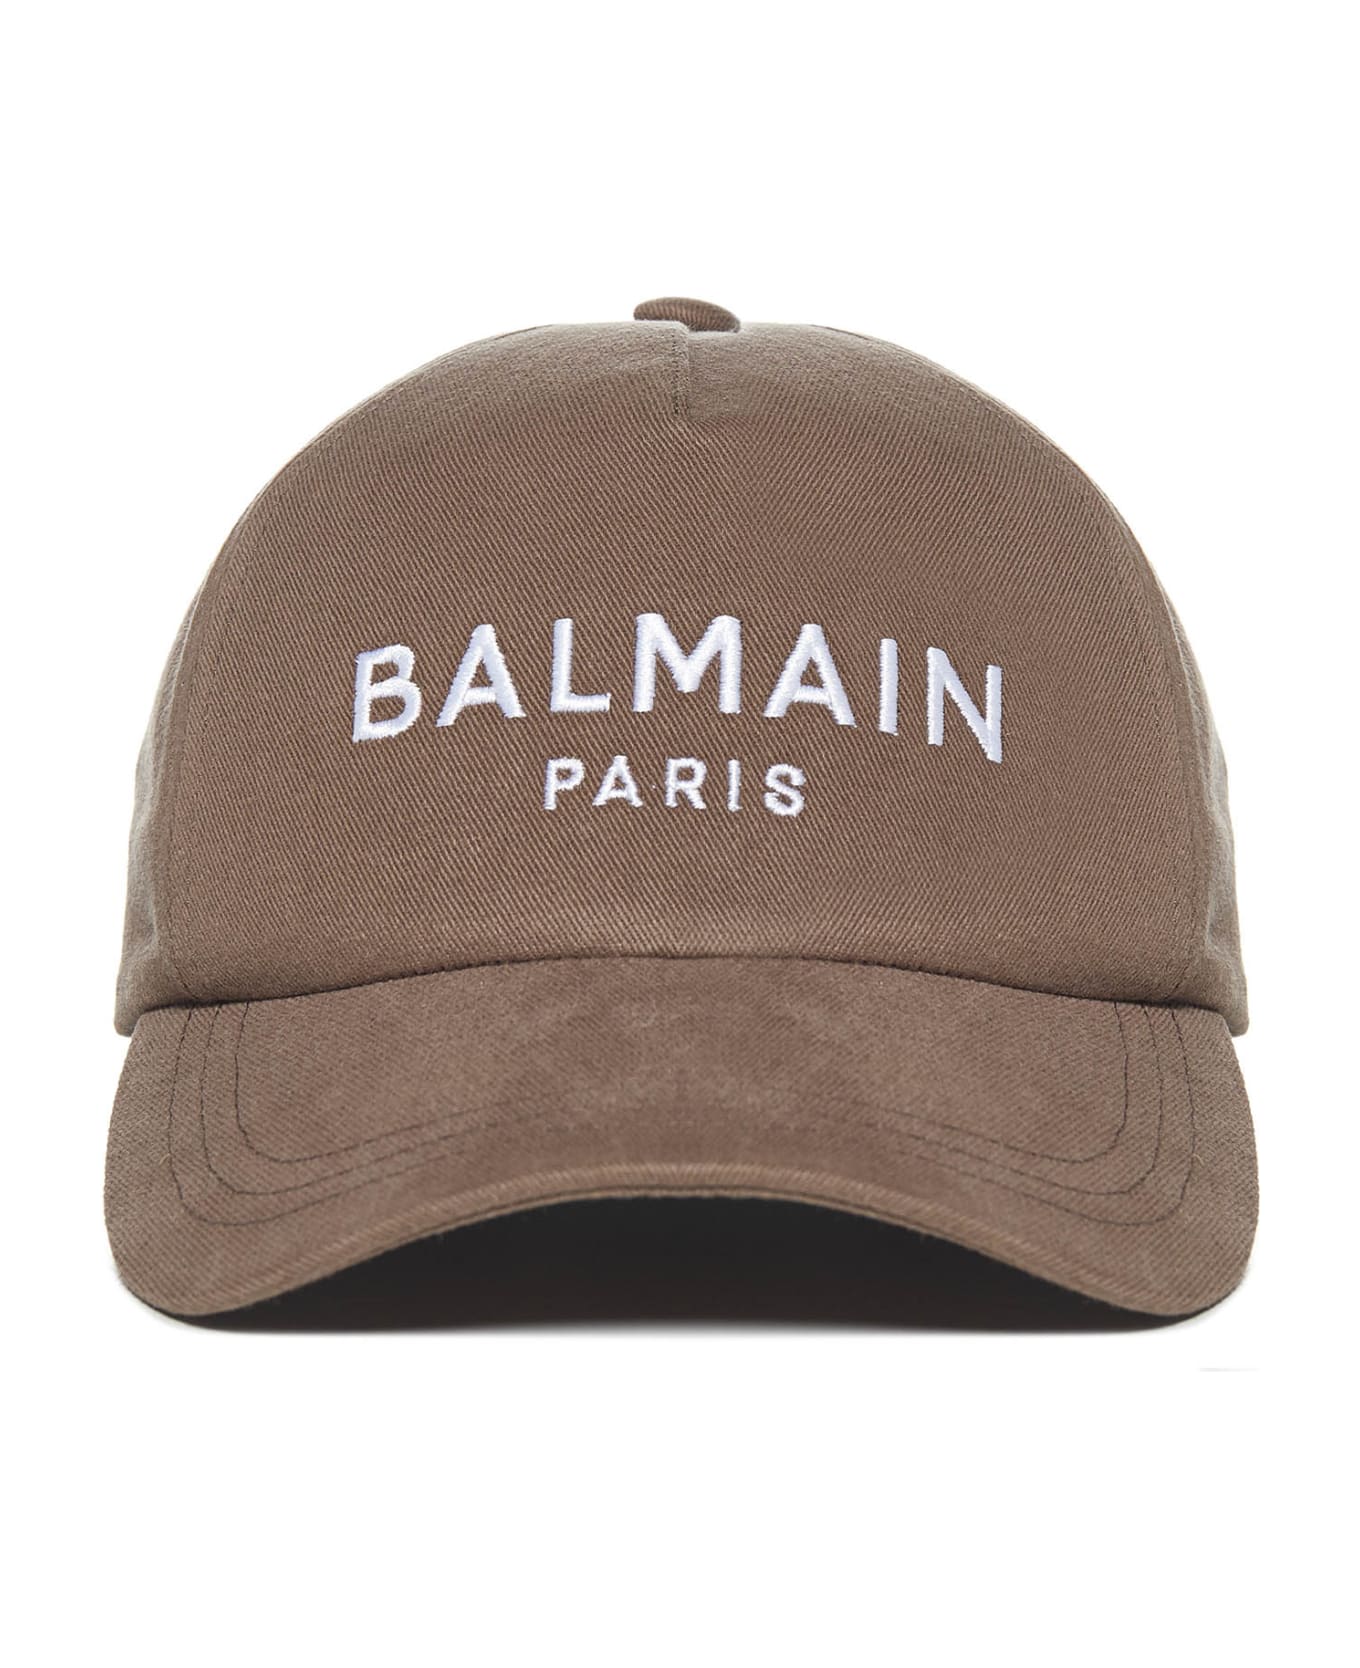 Balmain Hat - Beige 帽子